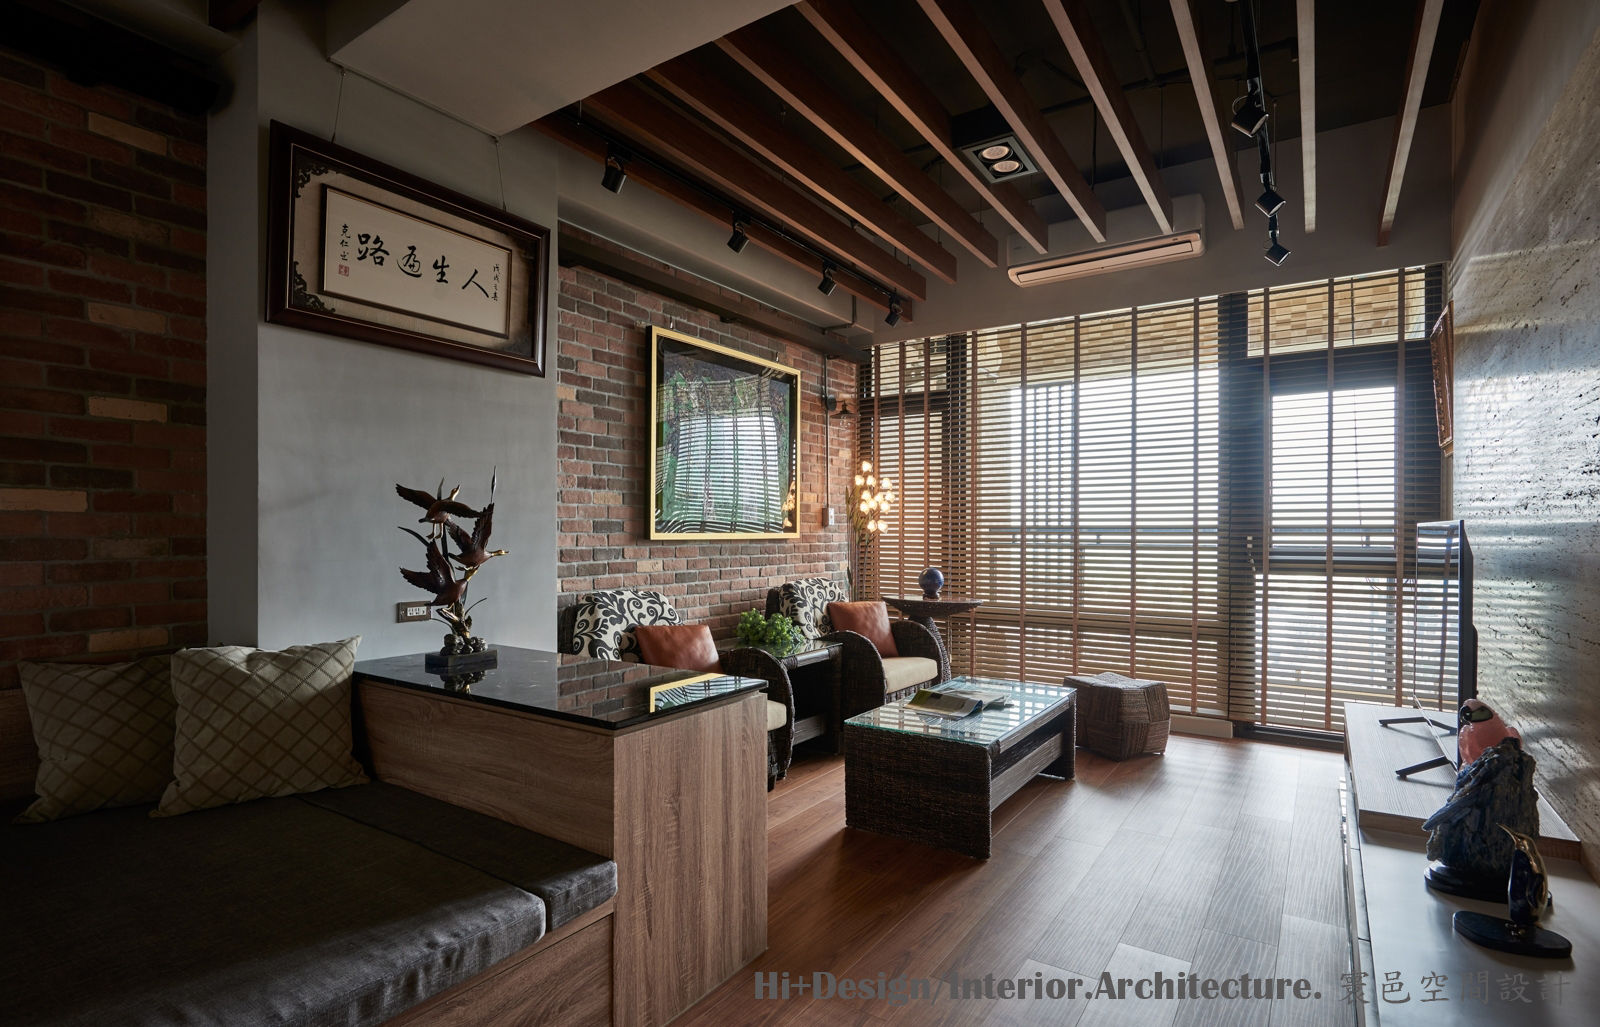 客廳區 Hi+Design/Interior.Architecture. 寰邑空間設計 Living room Bricks